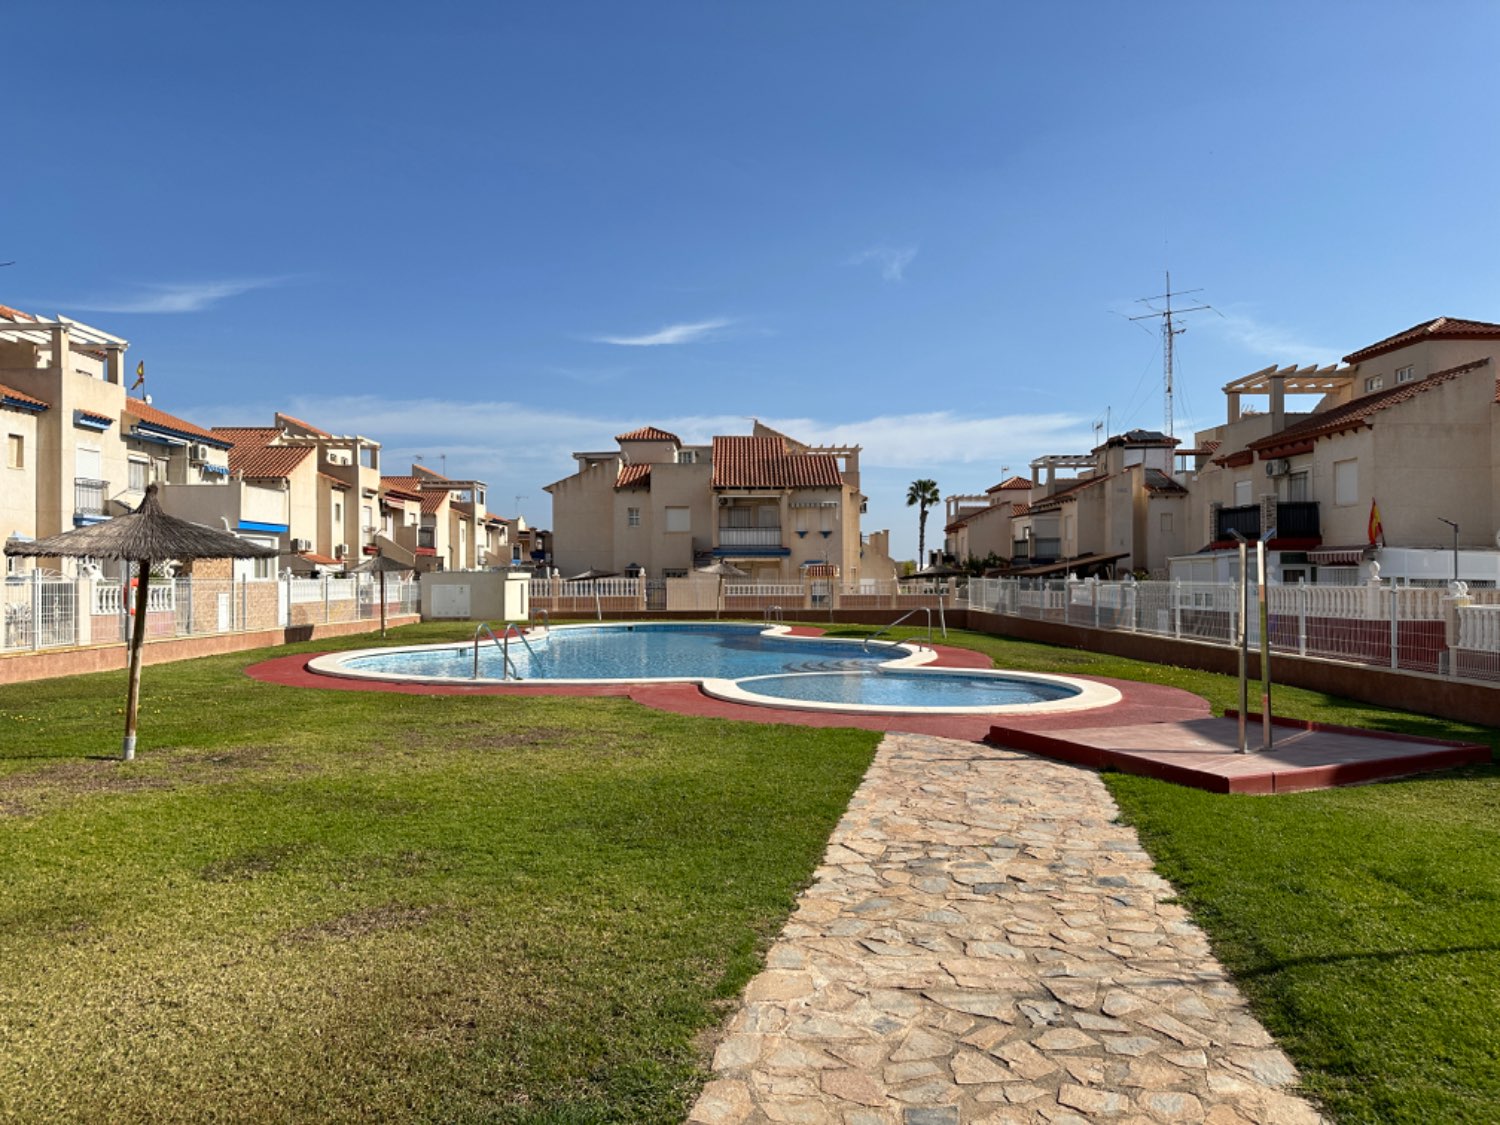 Apartamento de 3 dormitorios y 1 baño en playa flamenca!